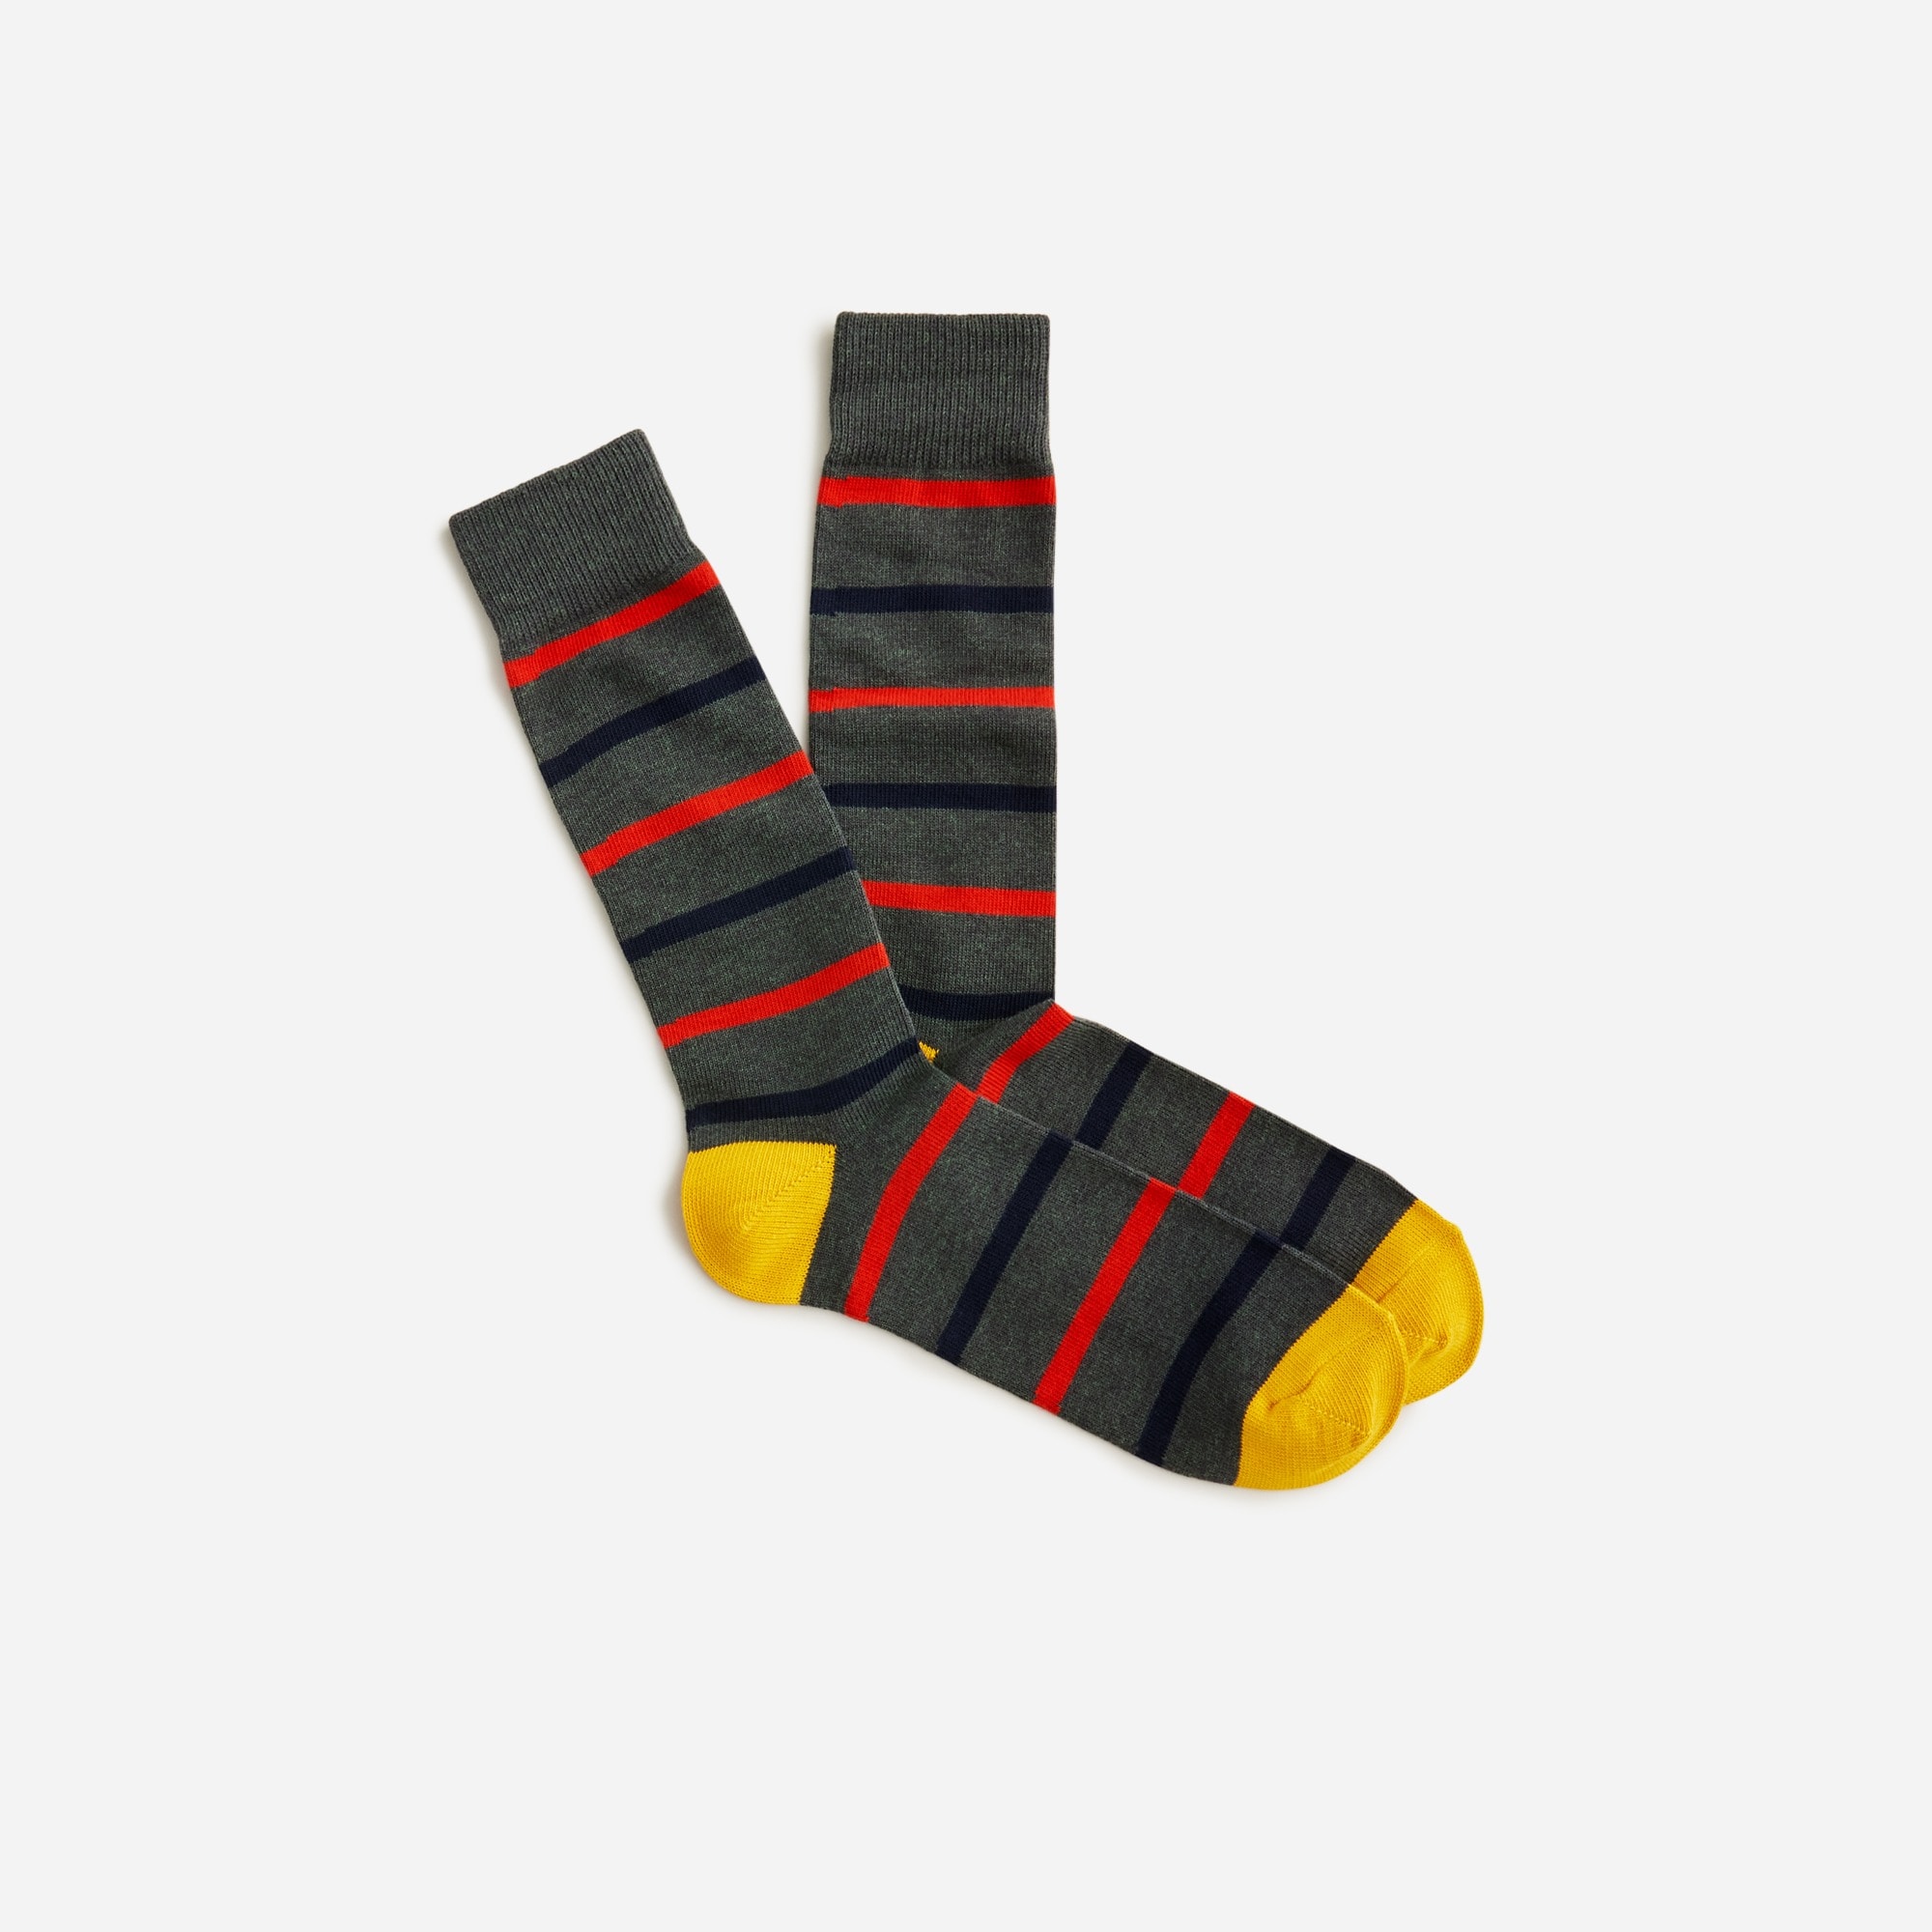 Jcrew Naval-striped socks